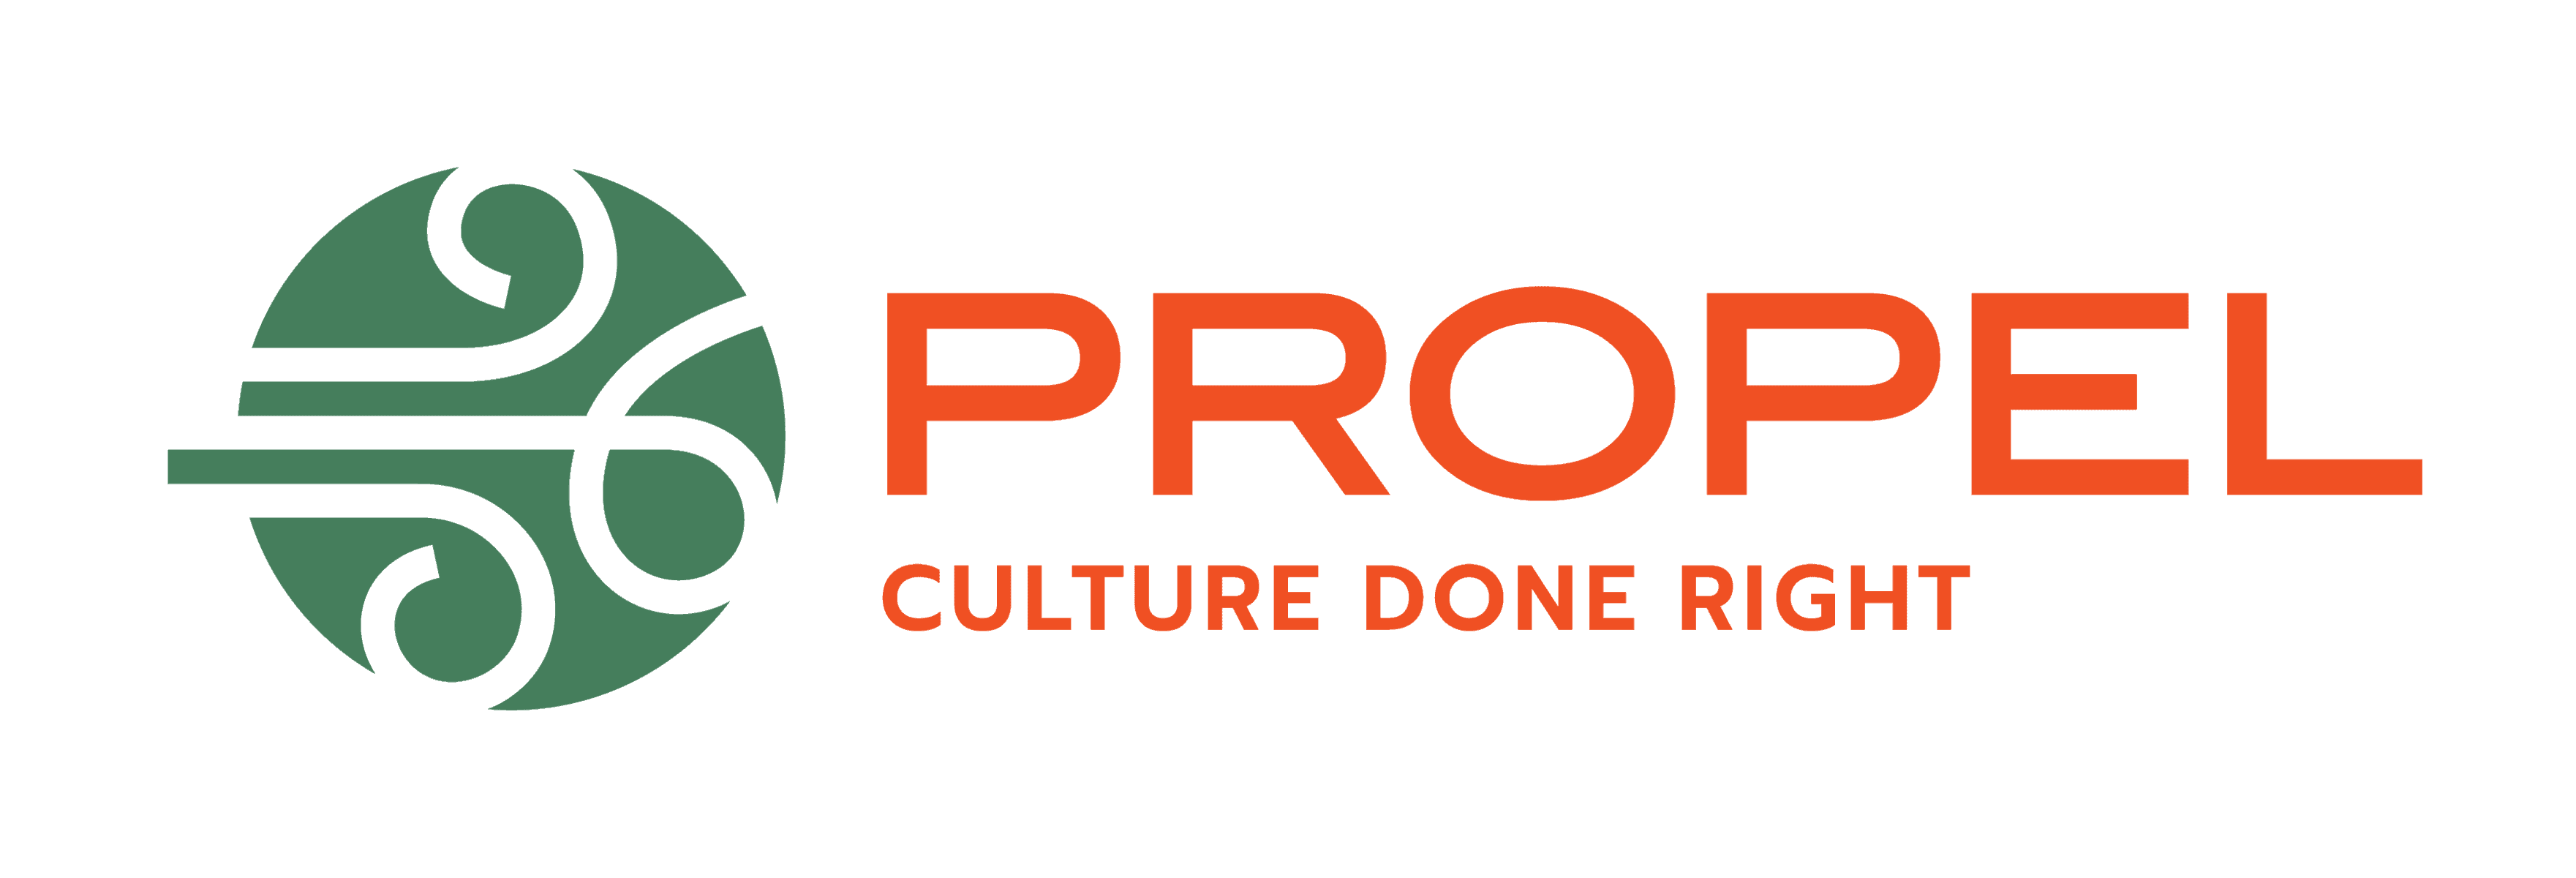 PROPEL culture consulting & design